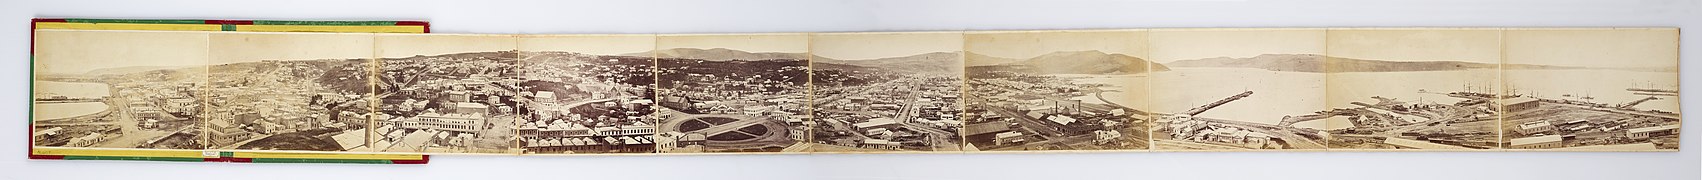 Dunedin 1874 Panorama.jpg